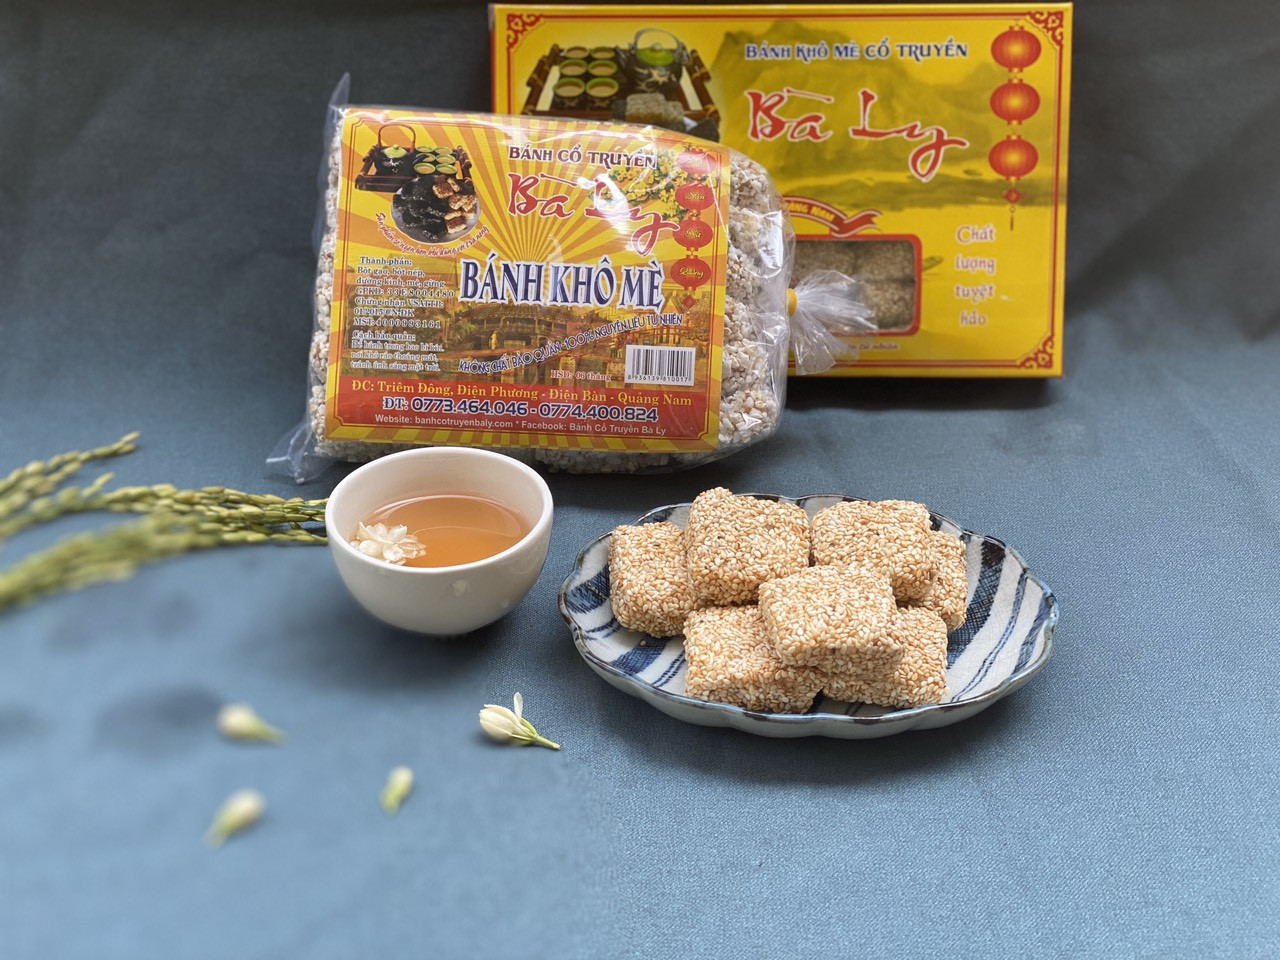 Bánh khô mè là đặc sản Đà Nẵng giá rẻ, thơm ngon